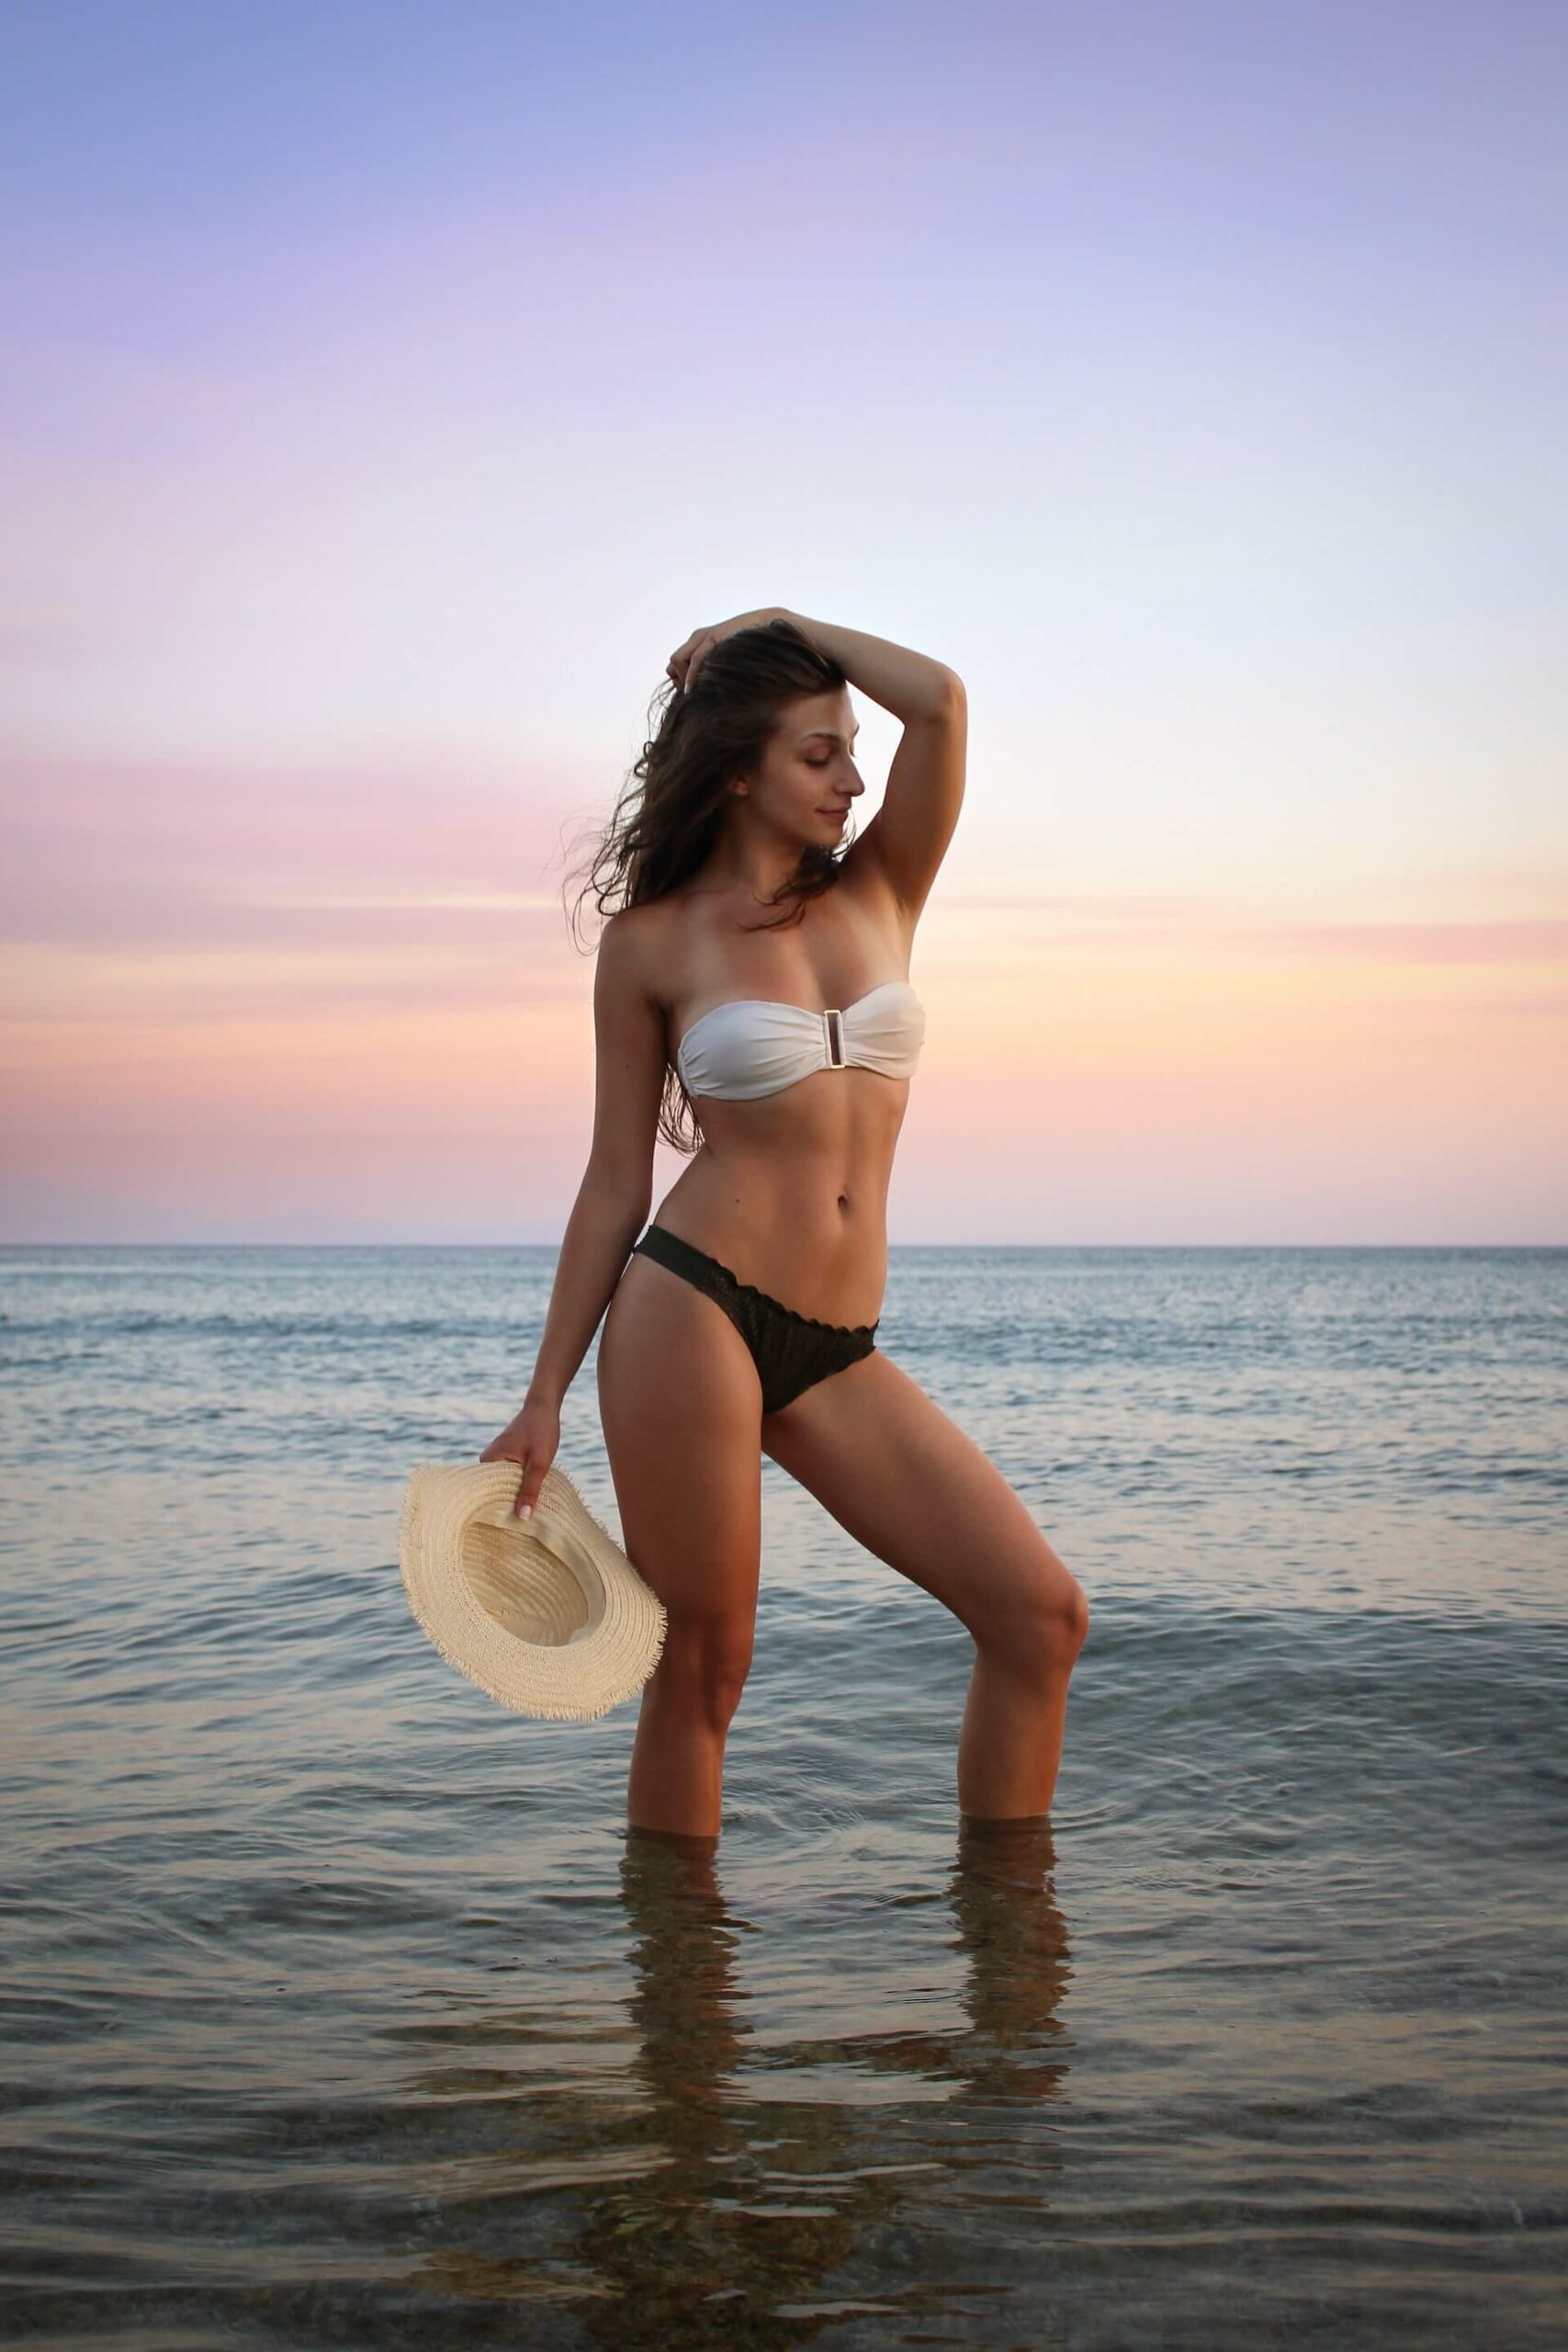 bikini girl standing in water